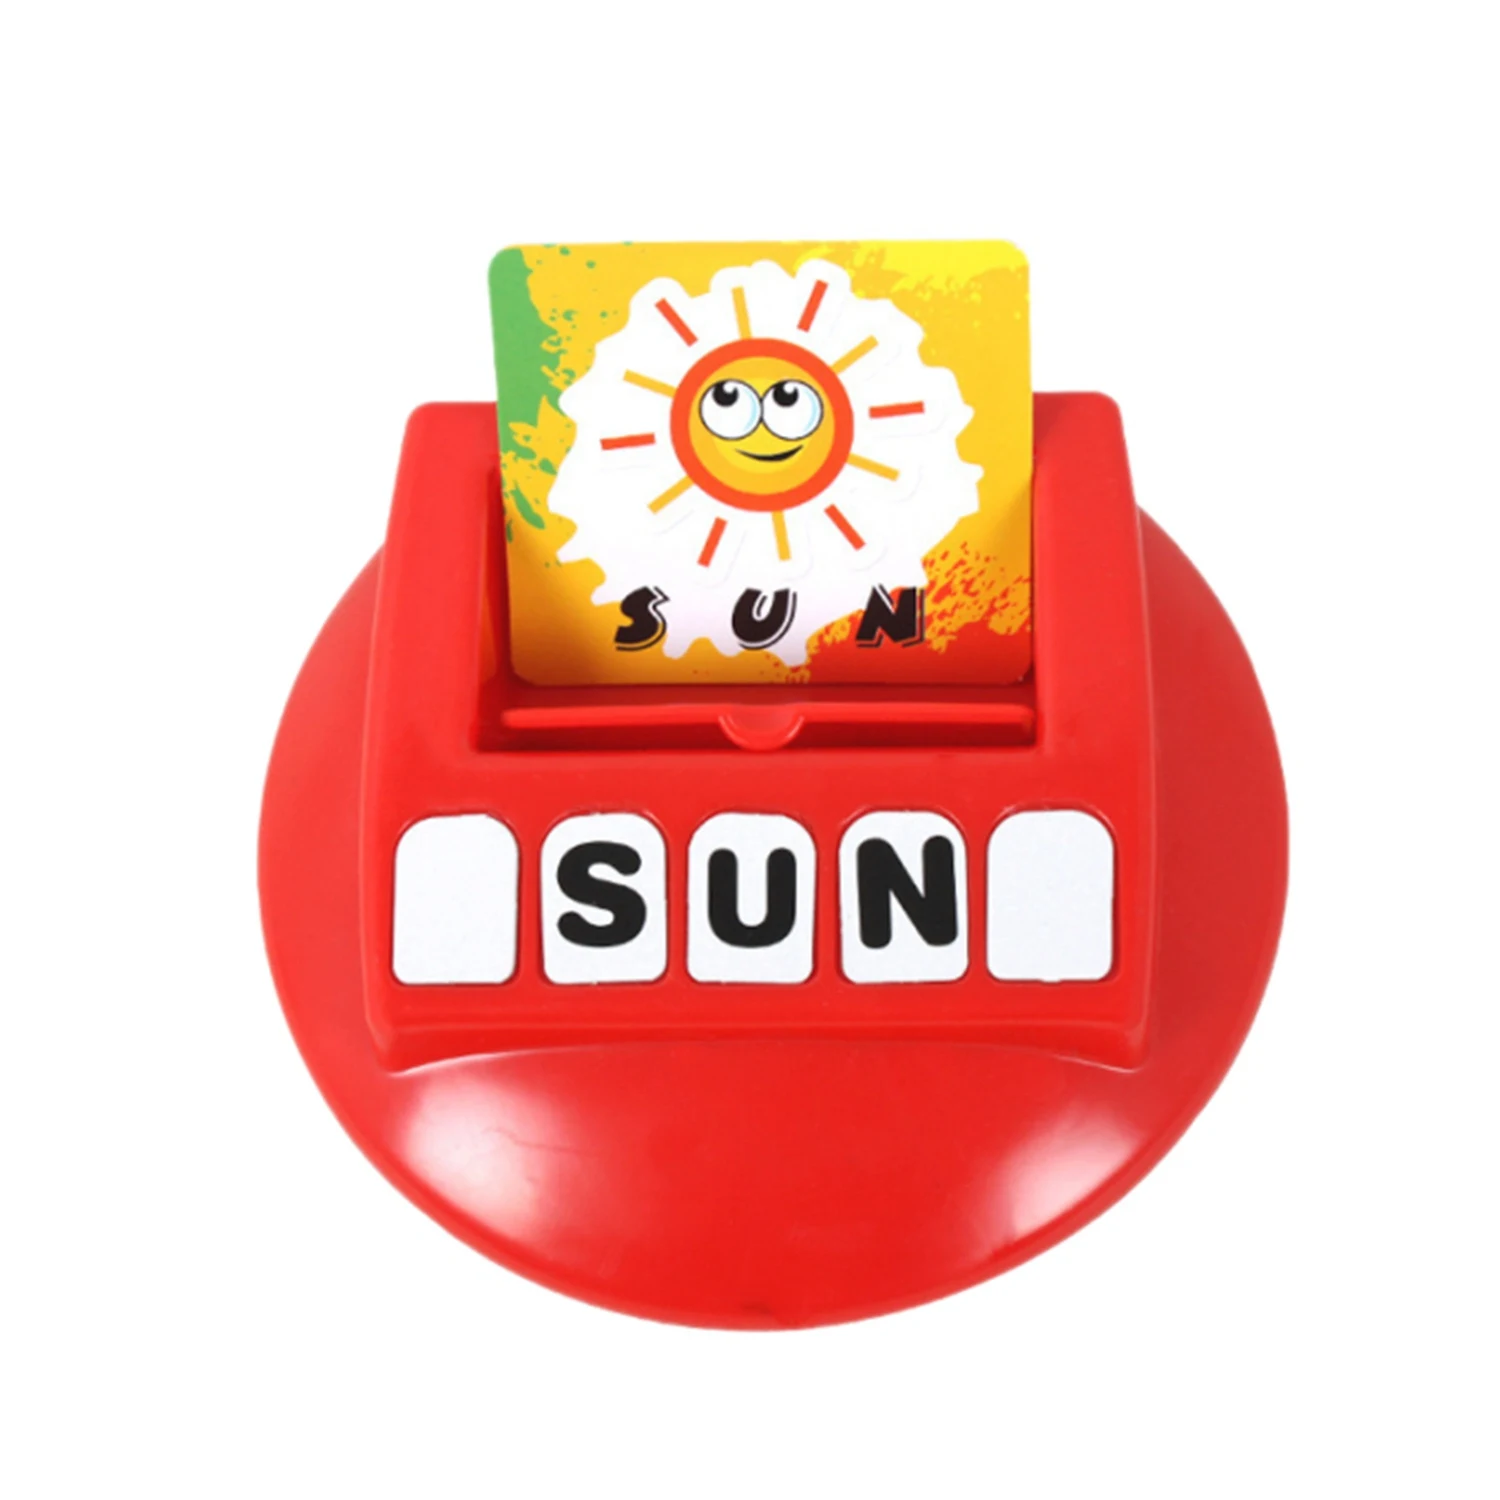 Игрушки с буквами и цифрами английские буквы алфавита игры для раннего развития игрушки